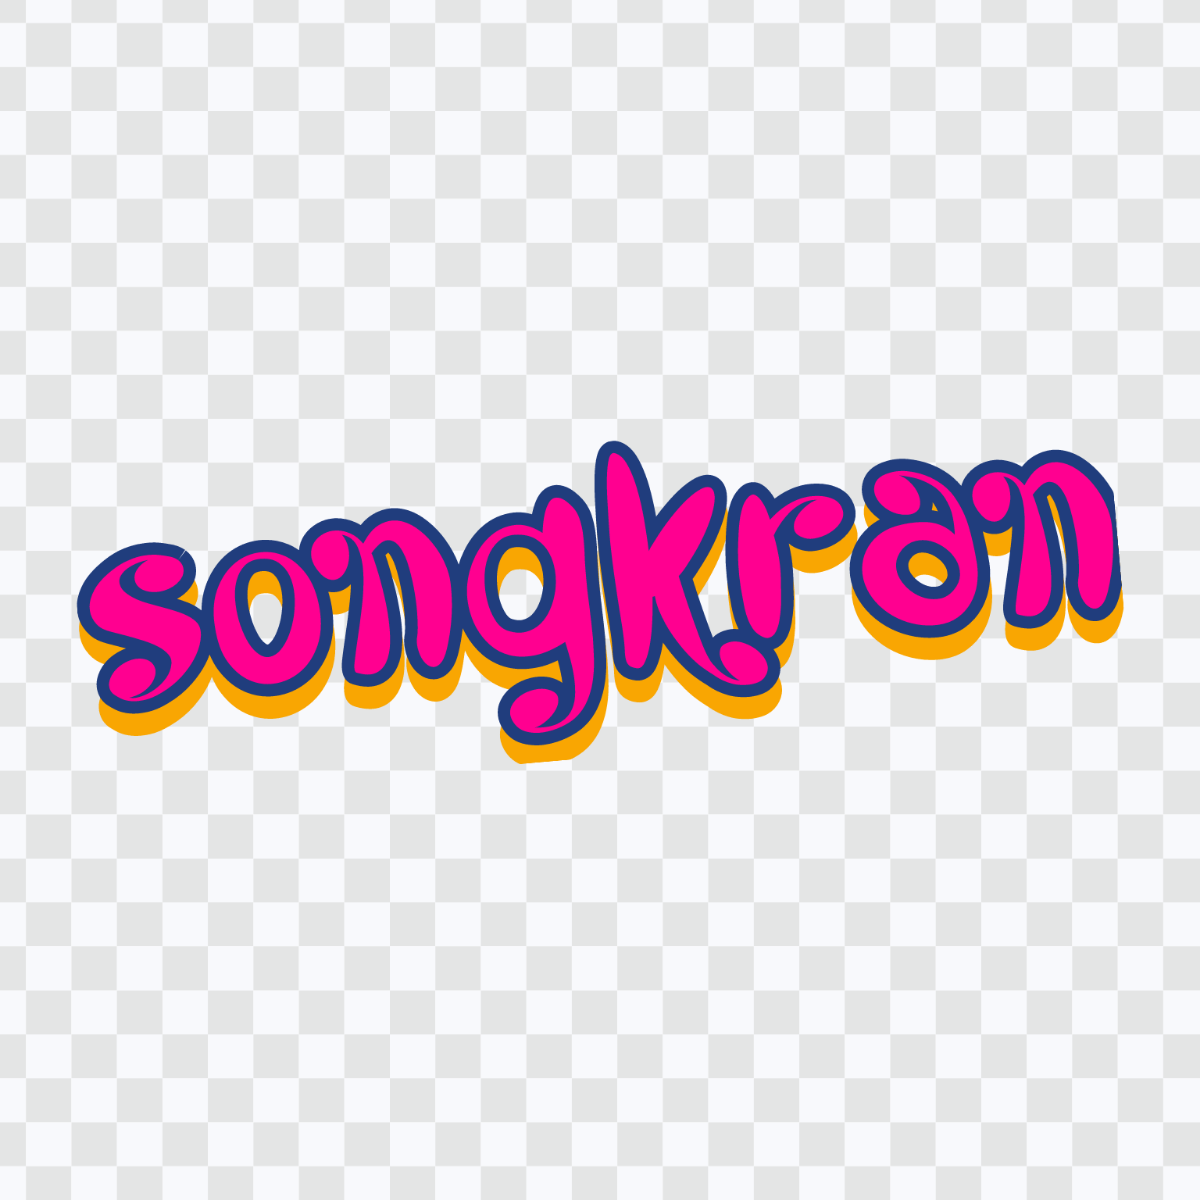 Songkran Text Effect Template